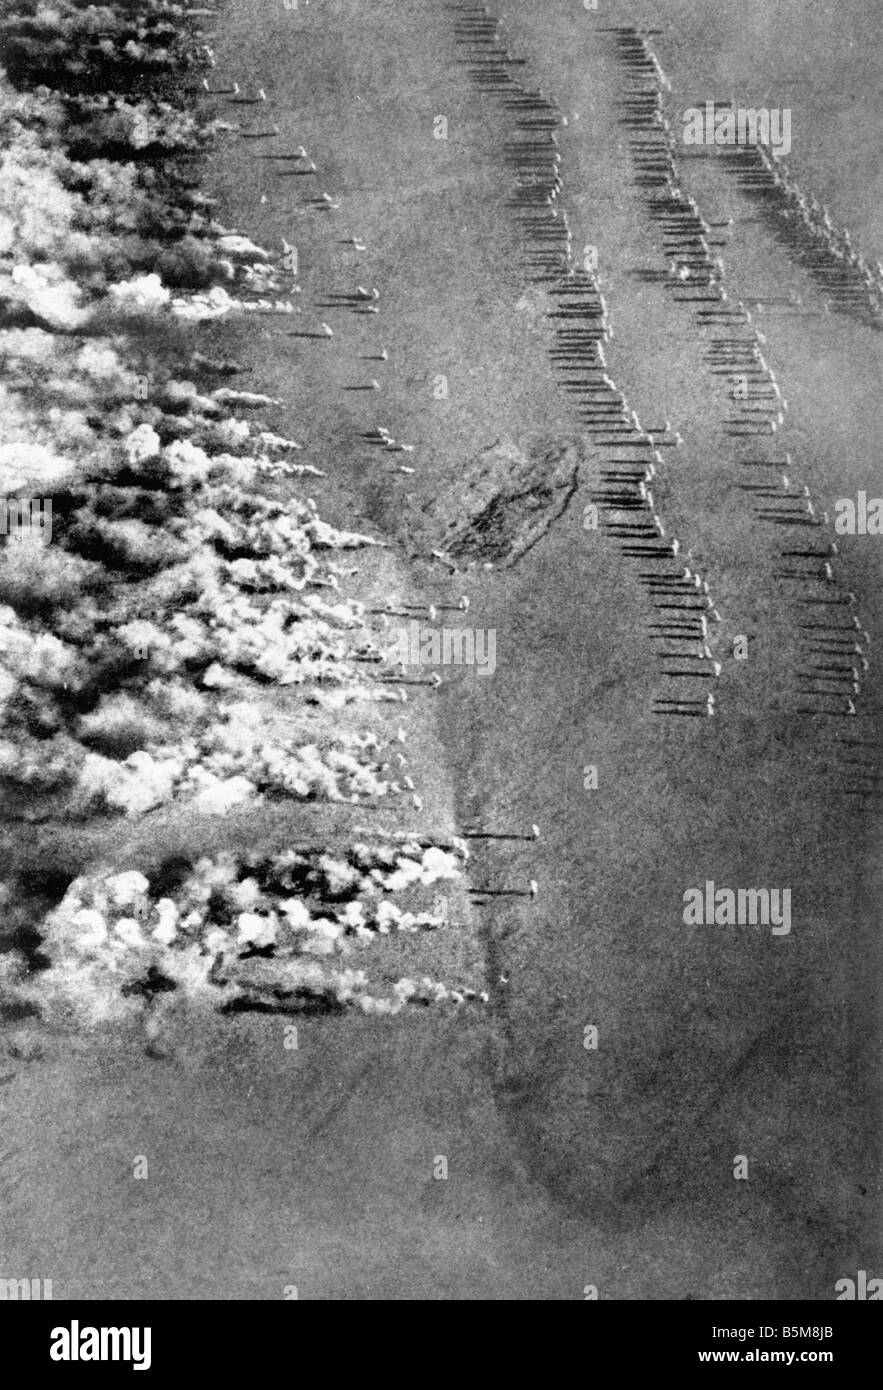 2 G55 G1 1915 1 Gas angreifen Luftbild WWI 1915 Geschichte Weltkrieg Krieg A Gas Gasangriff auf der östlichen Frontseite Foto aus einer Stockfoto